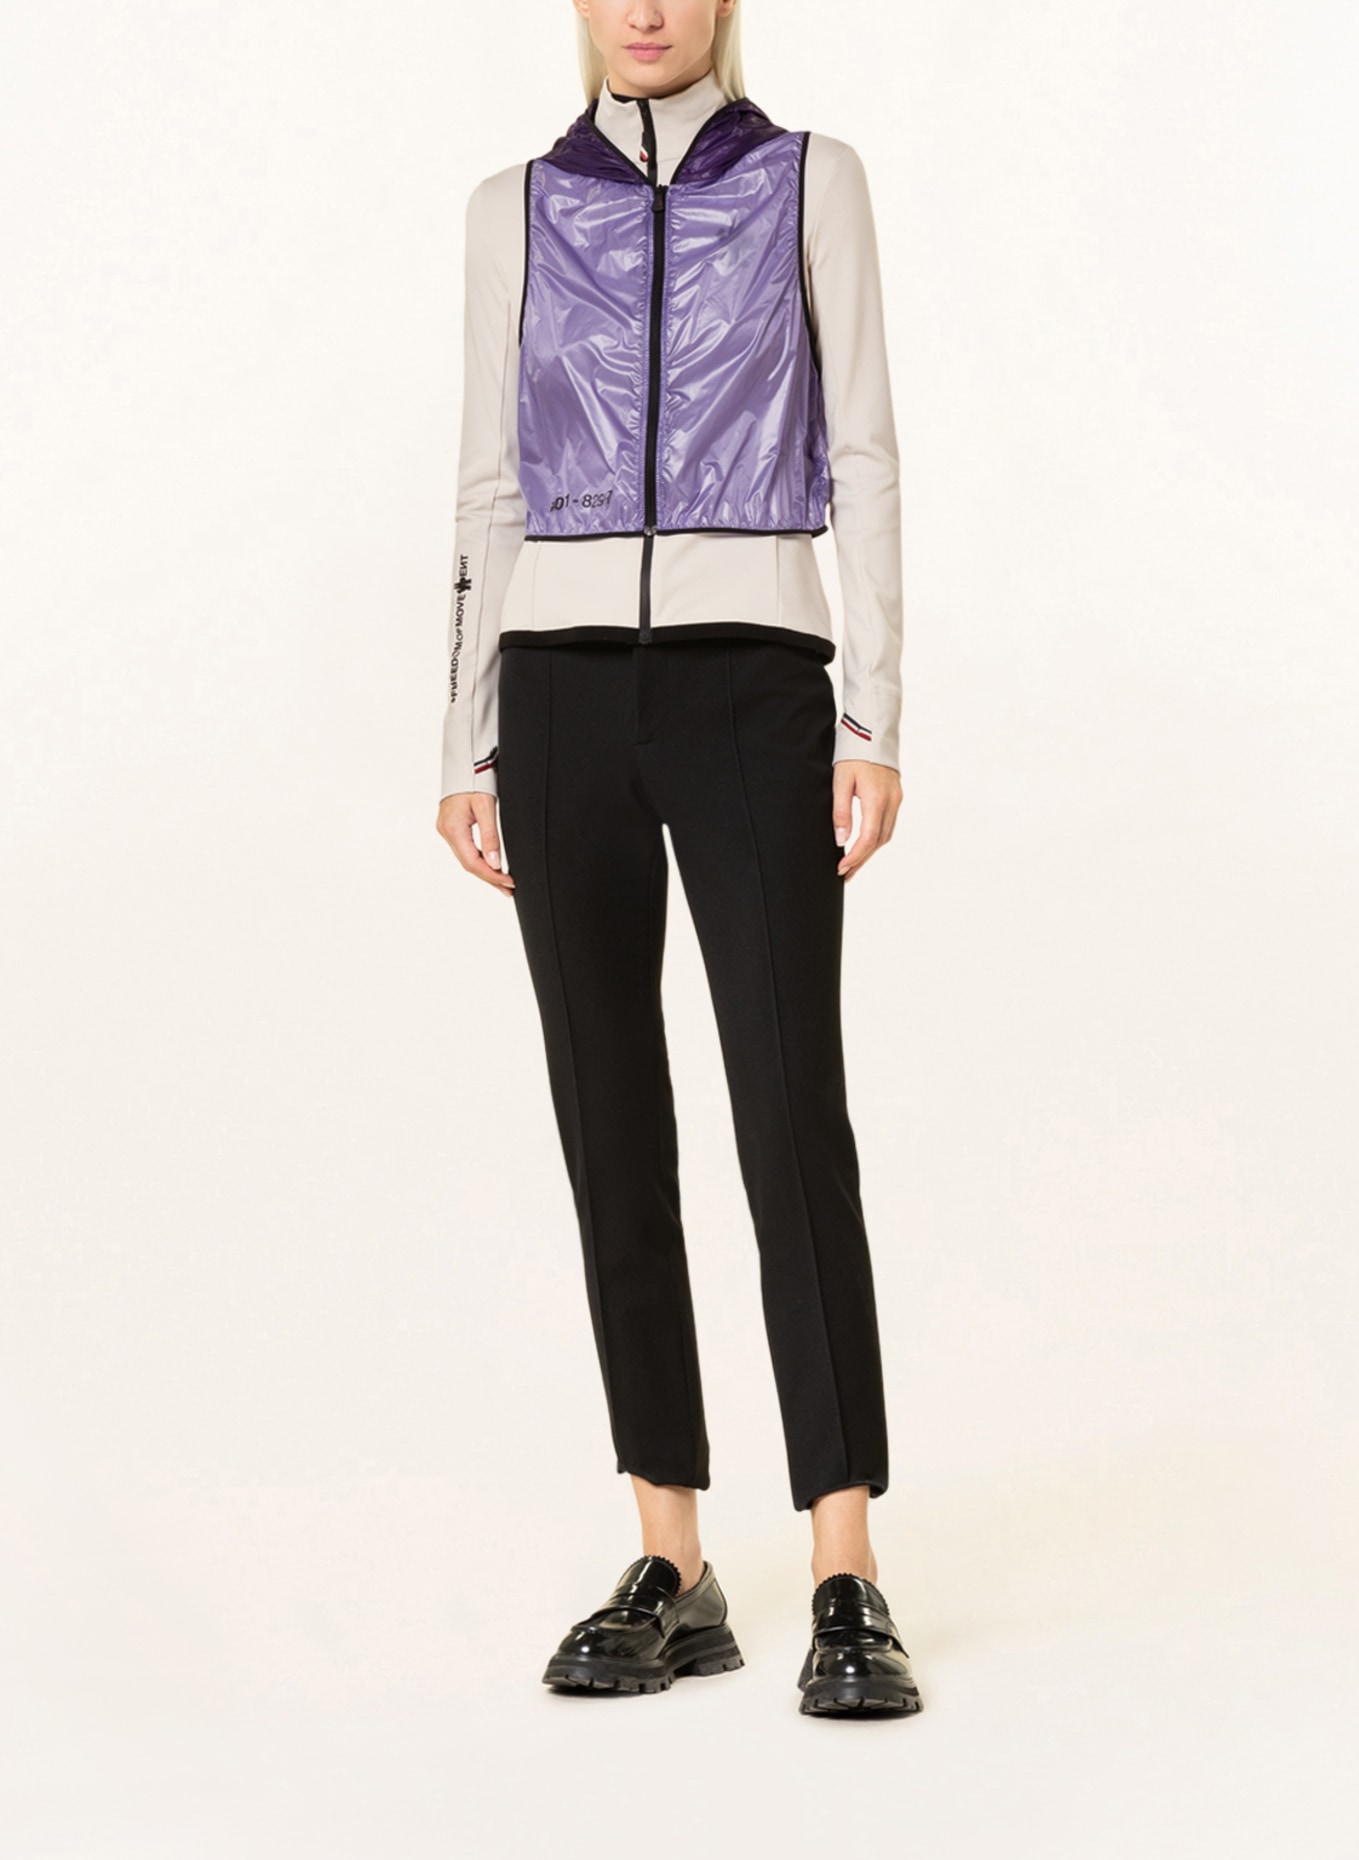 MONCLER GRENOBLE Jacket with detachable vest, Color: CREAM/ PURPLE (Image 2)